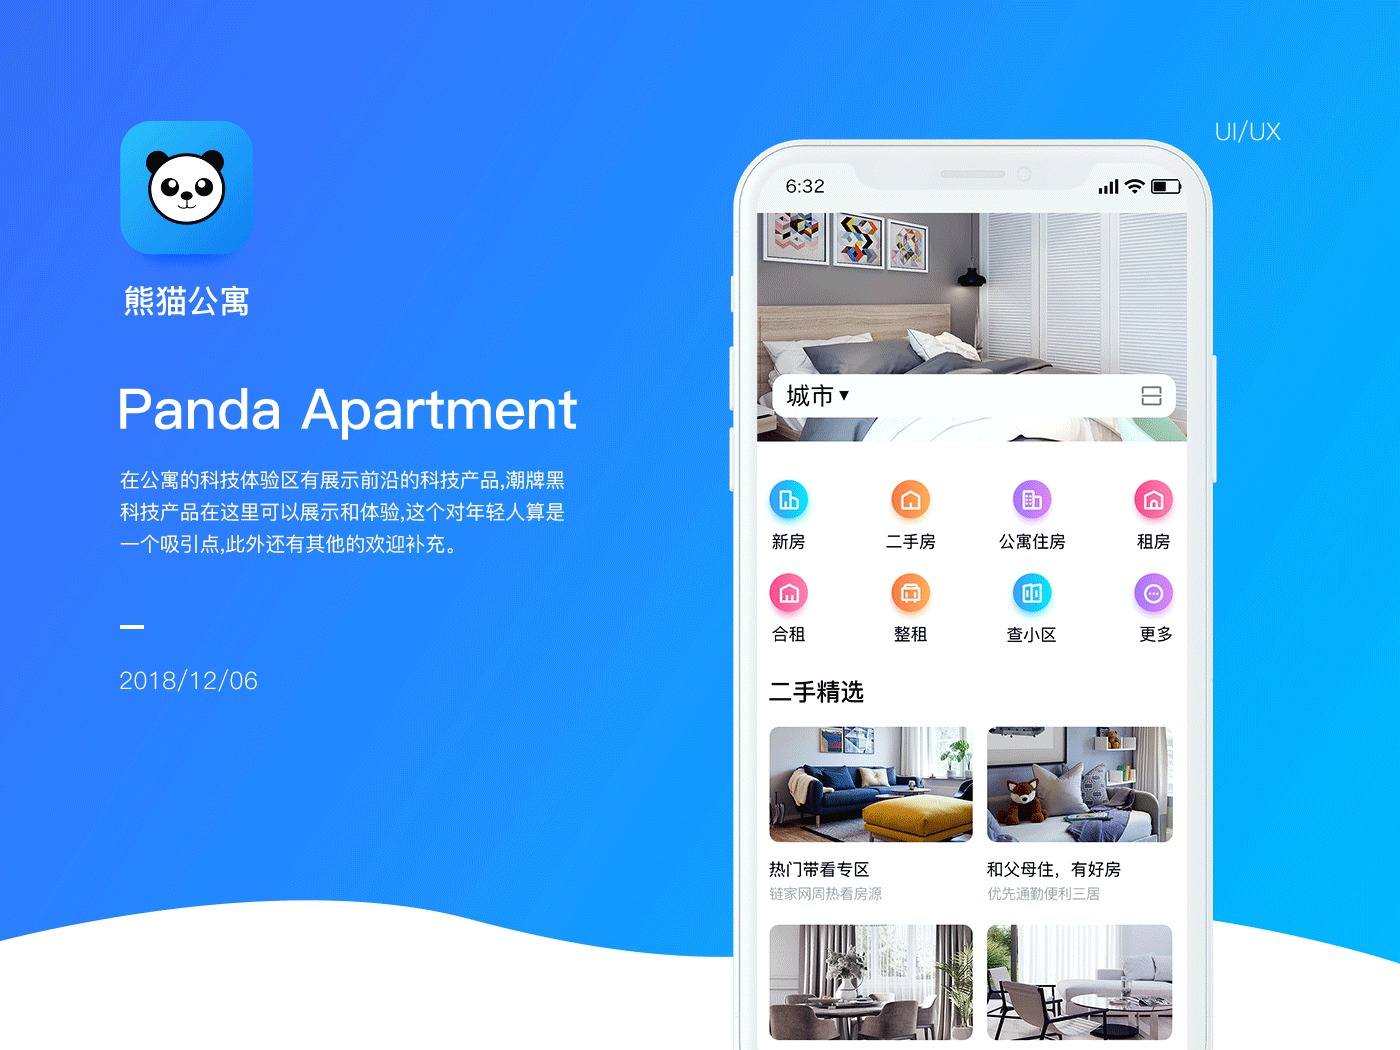 熊猫公寓 Panda Apartment – 熊猫生活服务